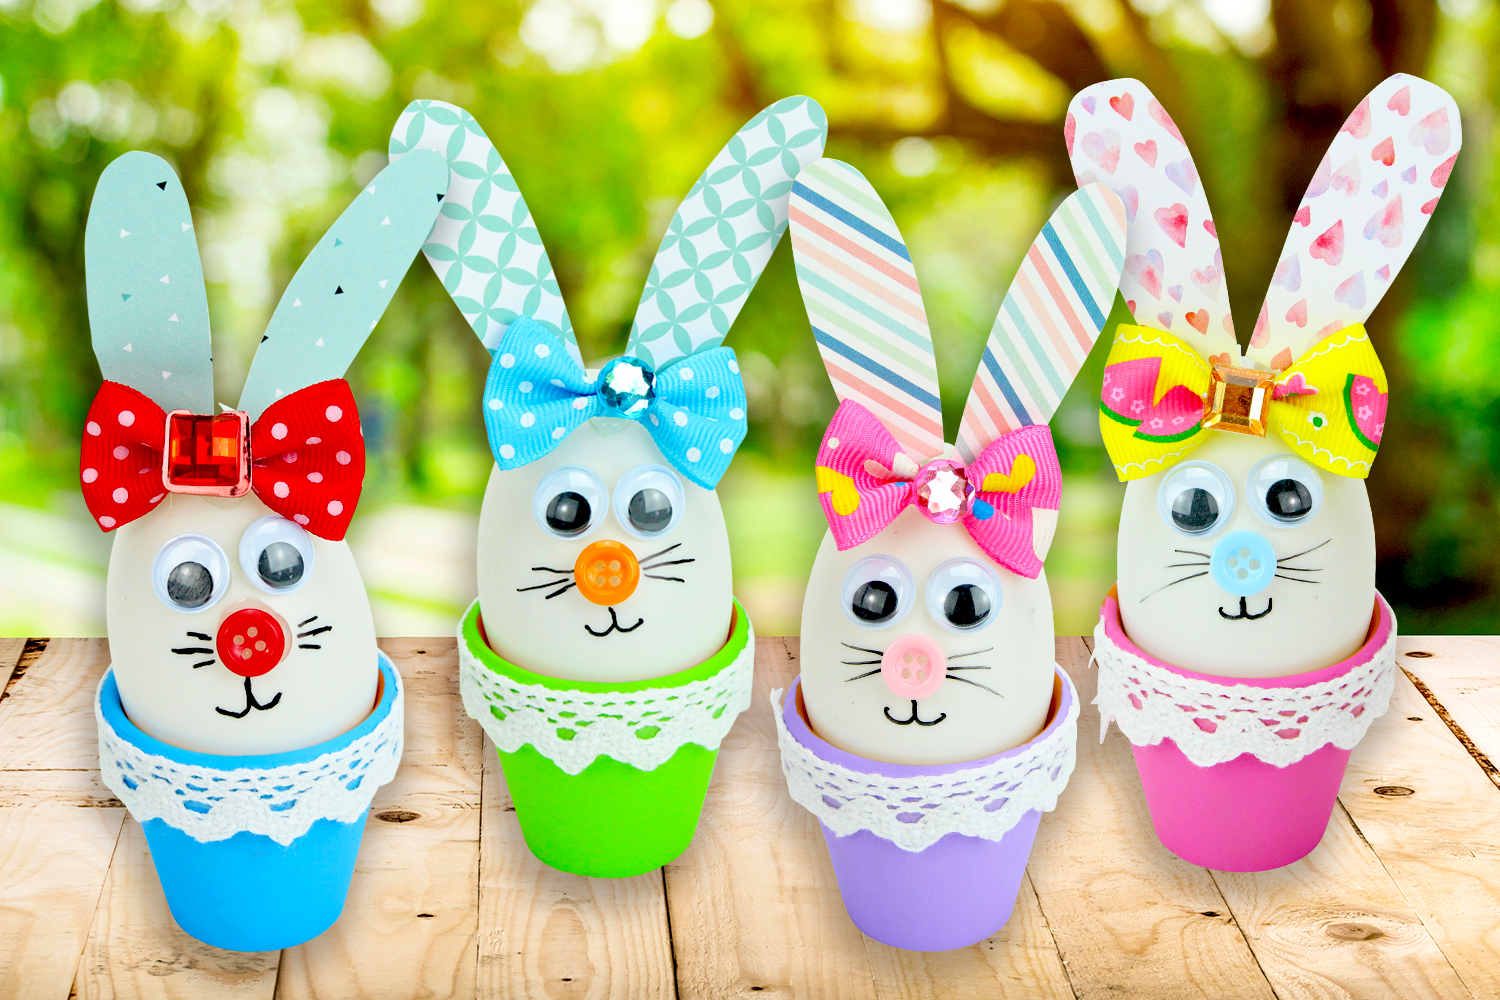 Décoration de Pâques : 5 étapes pour faire des pompons lapin de Pâques